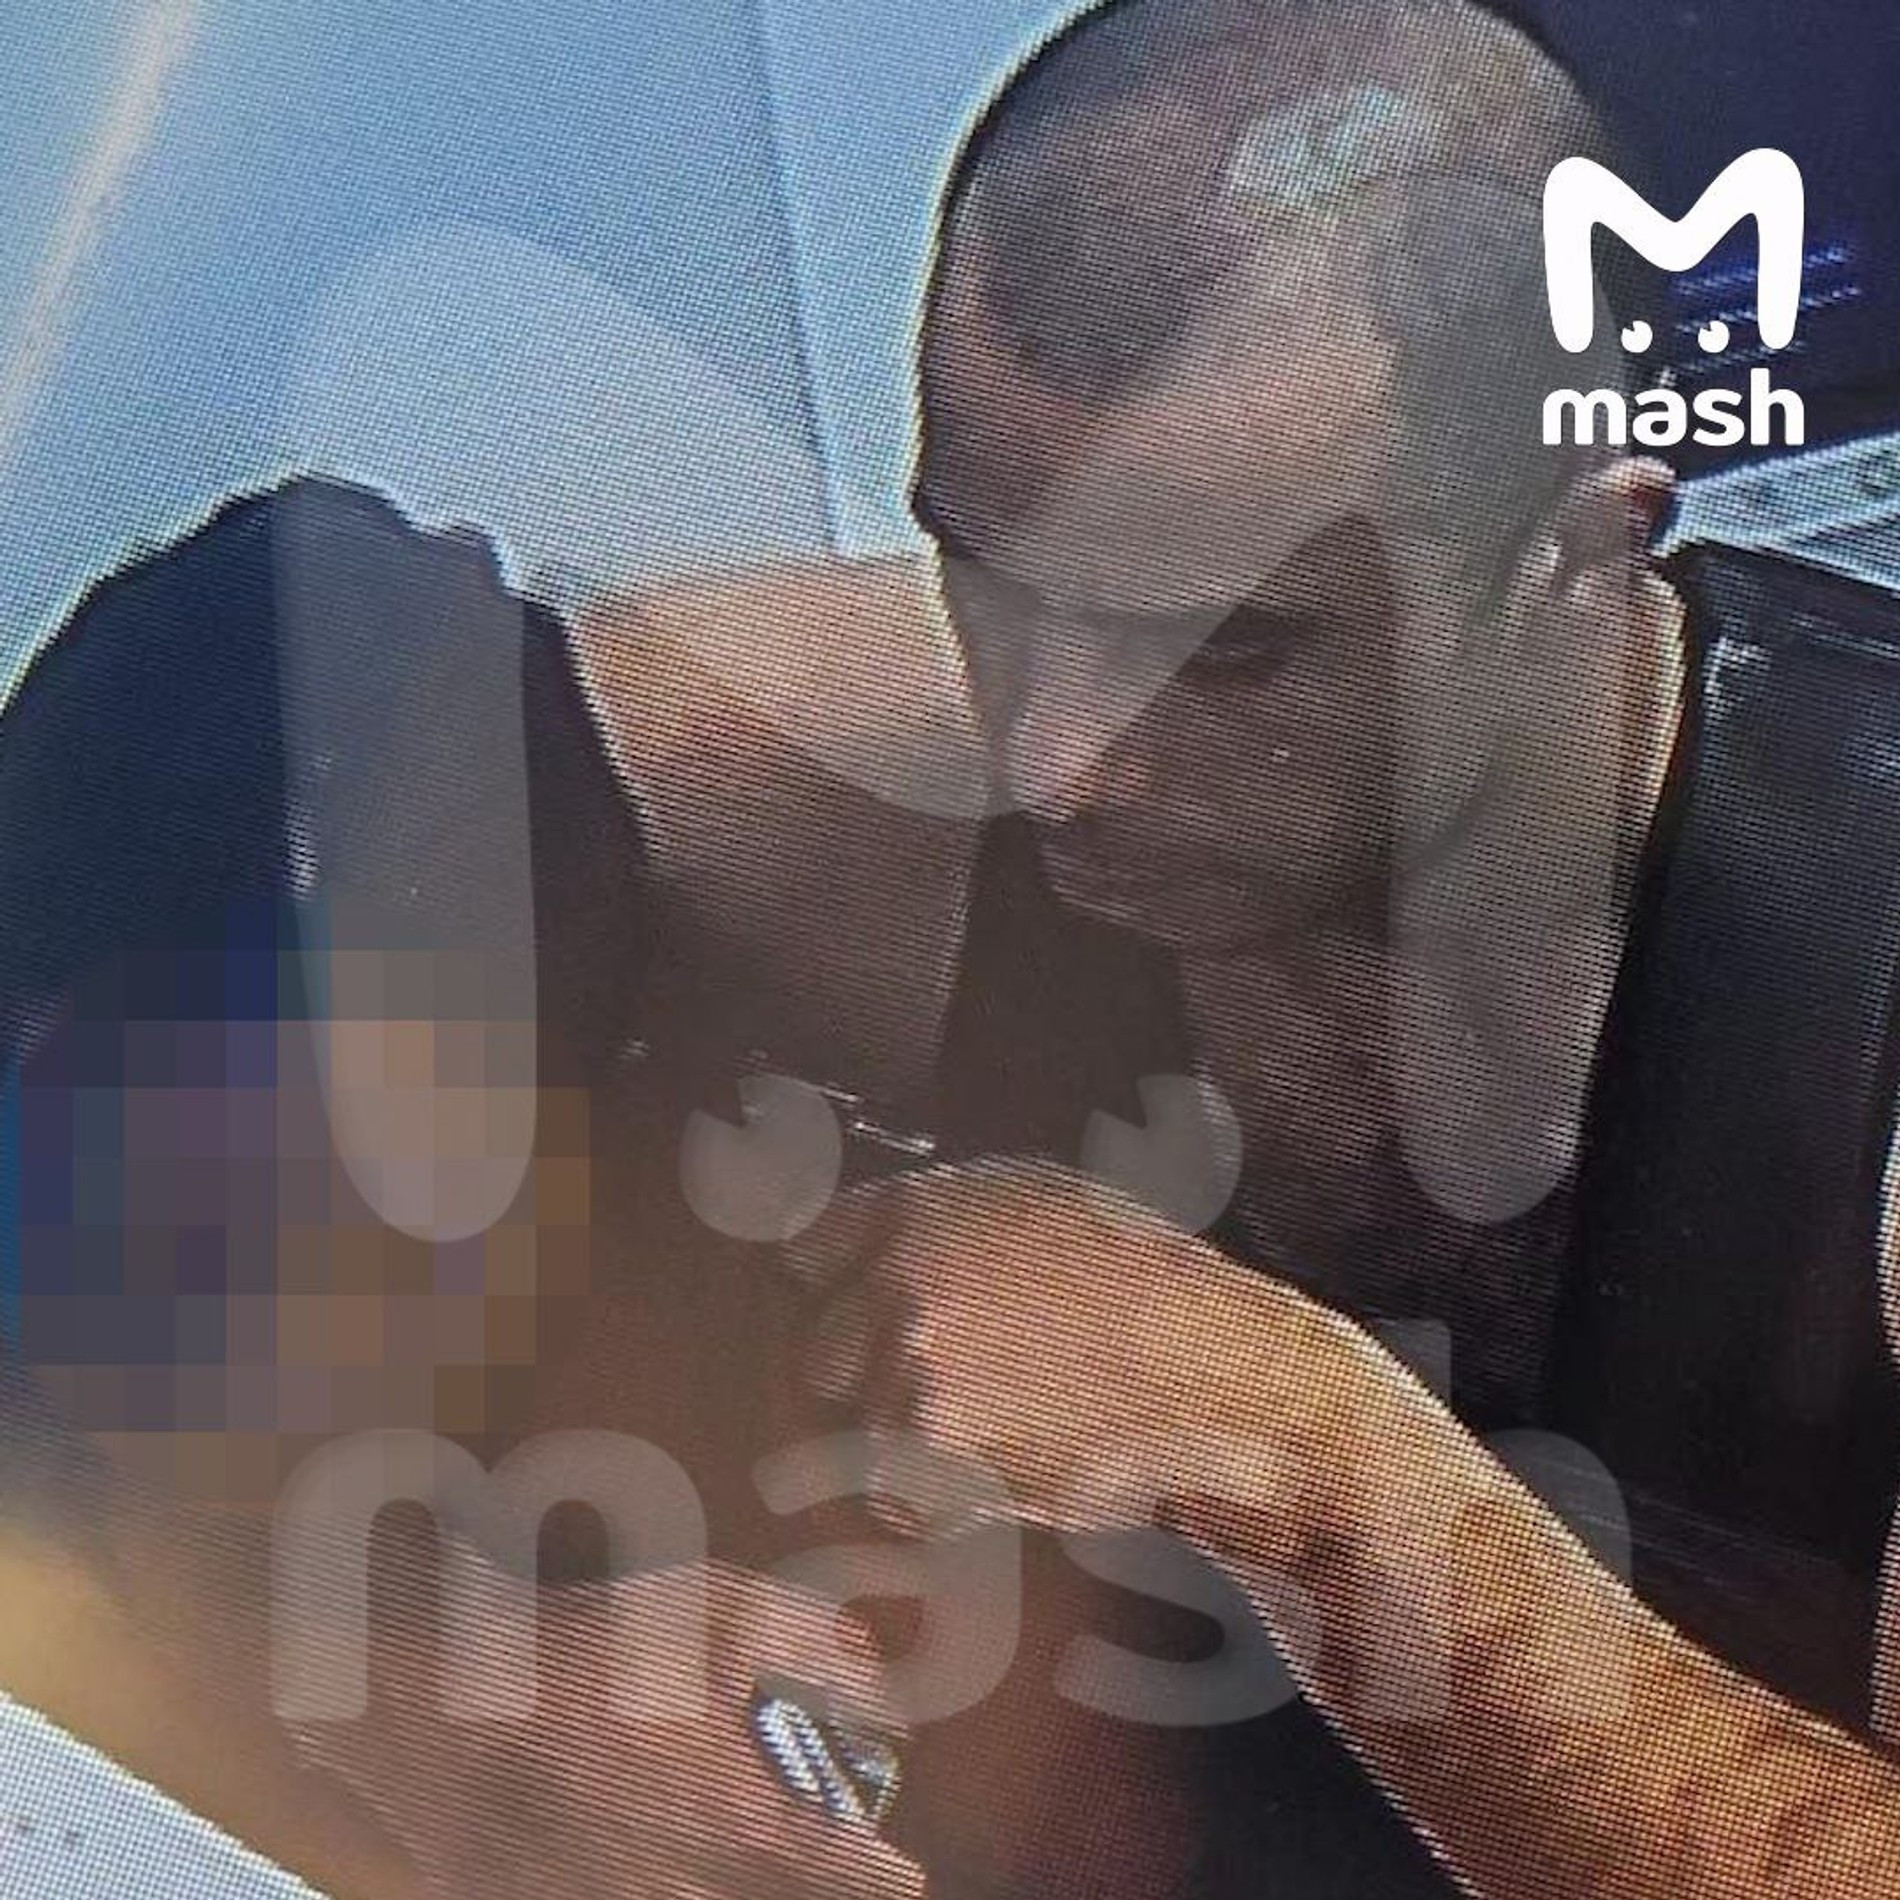 Преступник держит пистолет у виска сотрудницы банка
Фото: Telegram-канал Mash